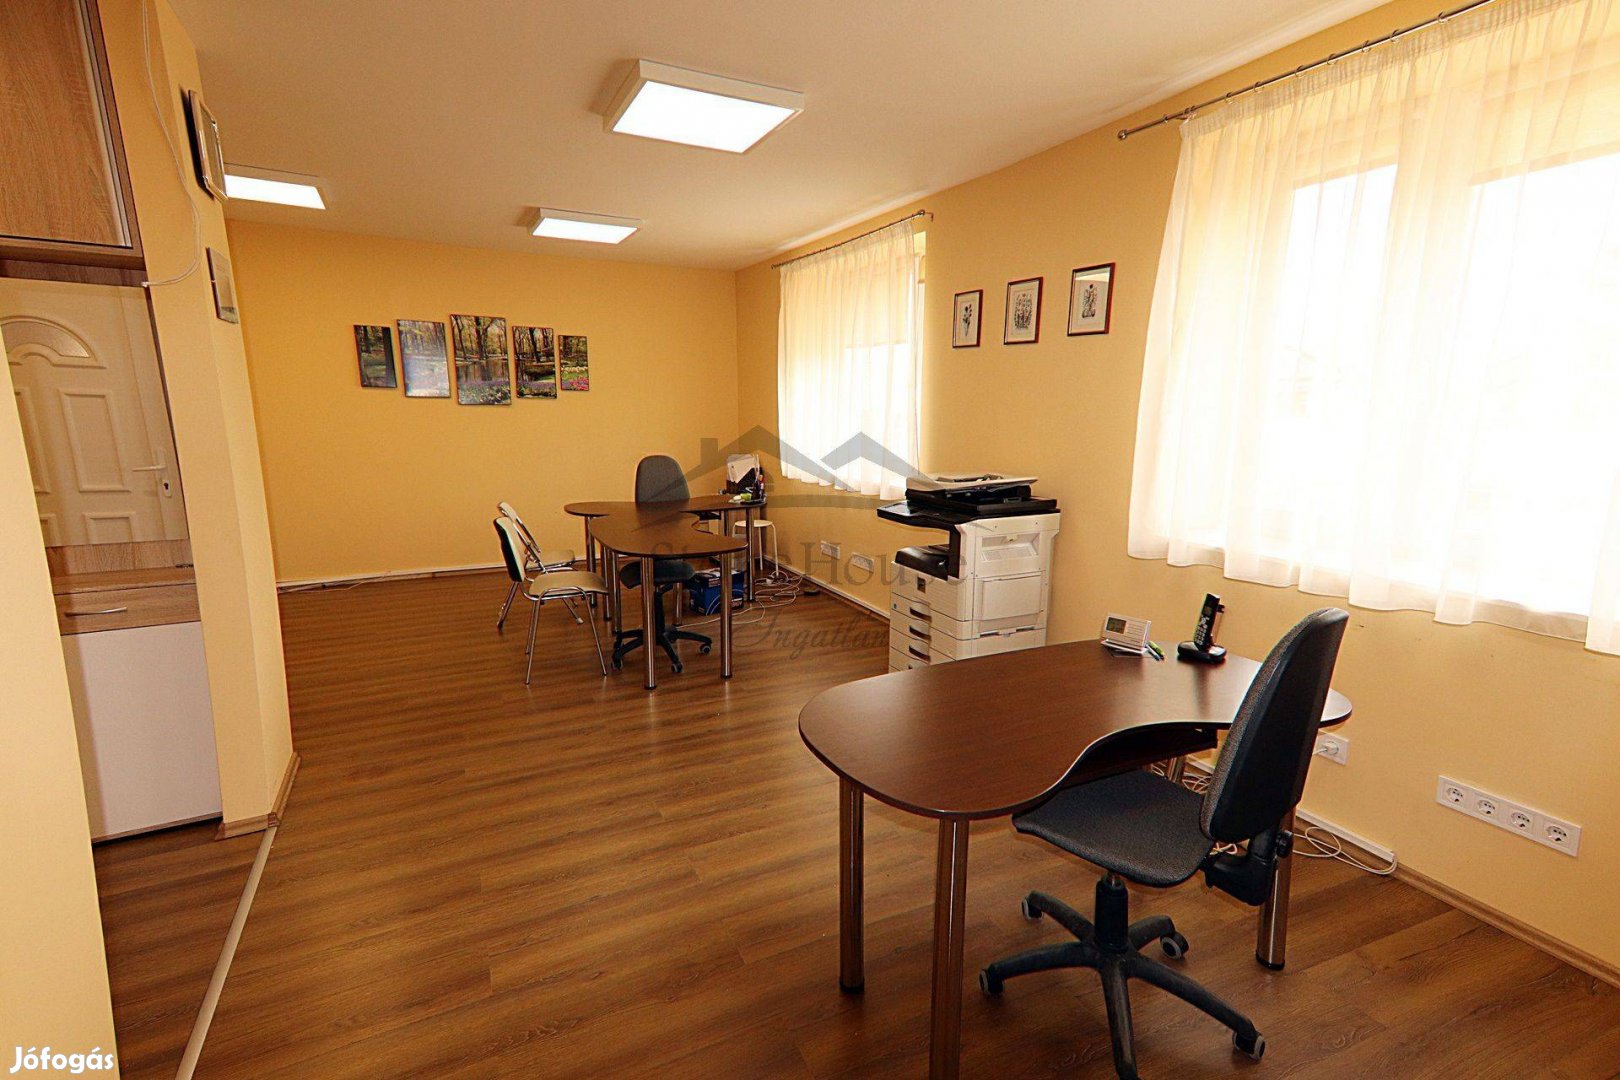 Két lakásos ikerházban földszinti iroda Győrben kedvező áron eladó